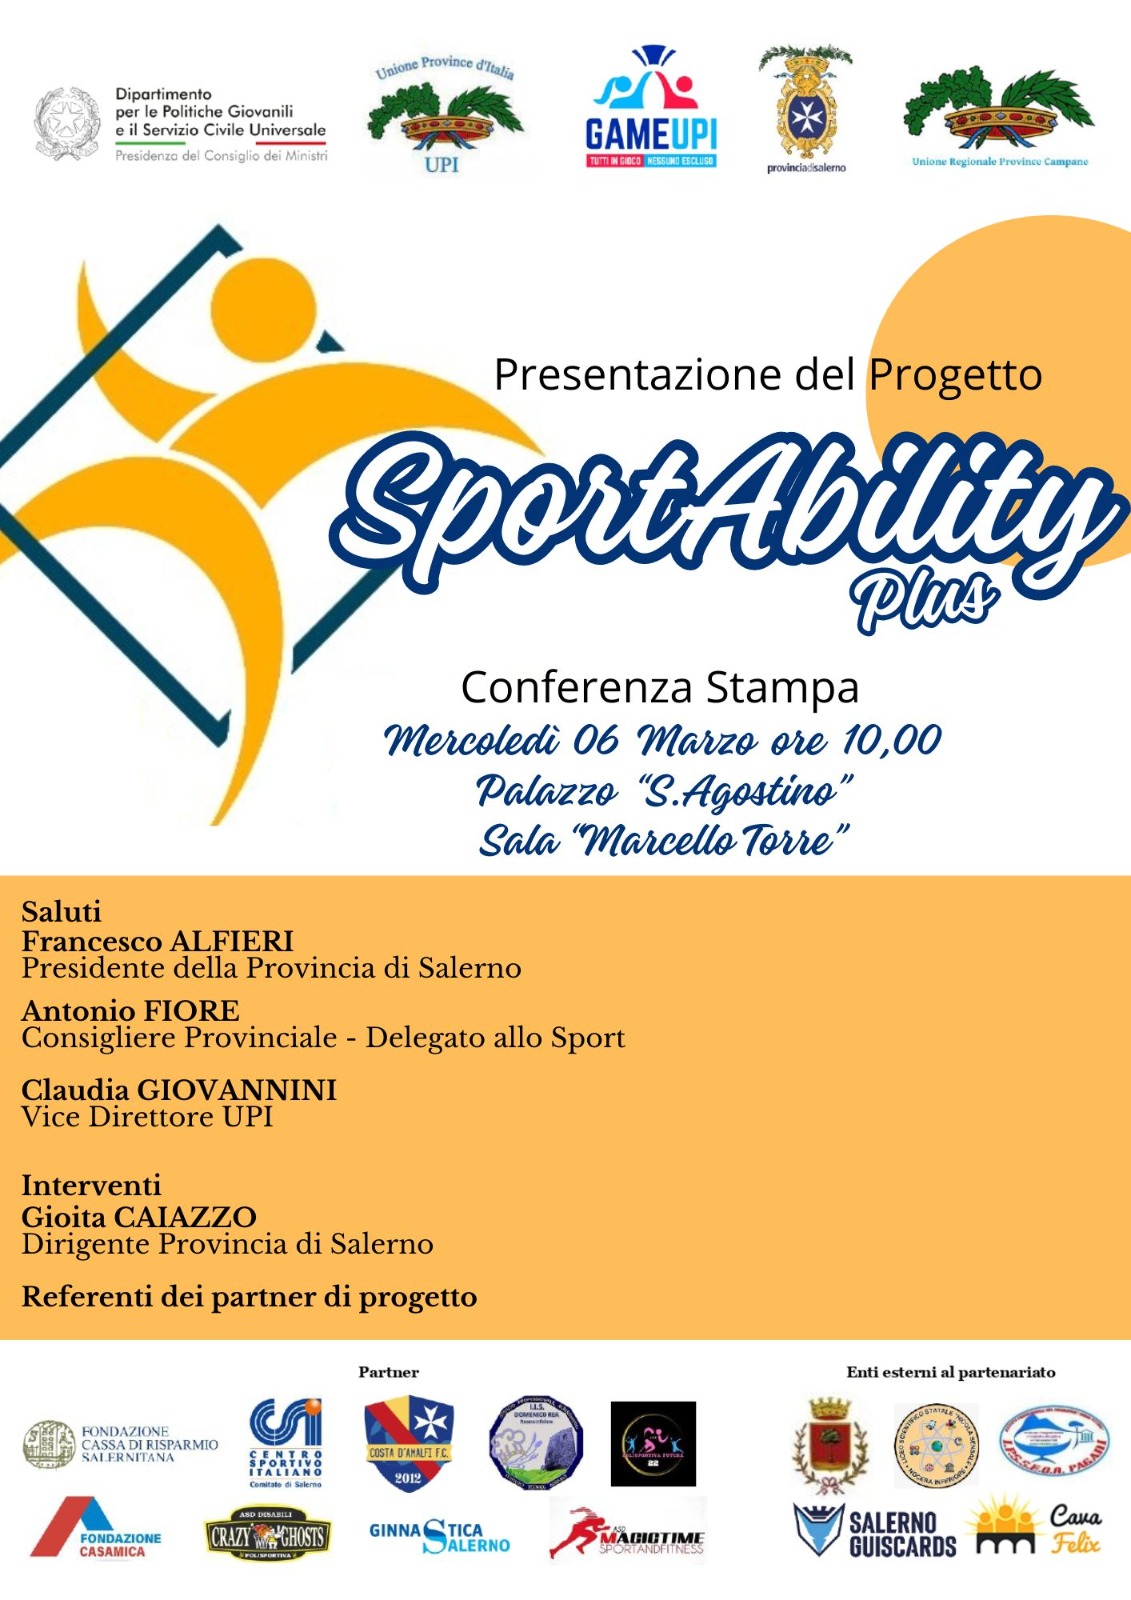 Salerno: GAME UPI, progetto Sportabilty plus, conferenza stampa